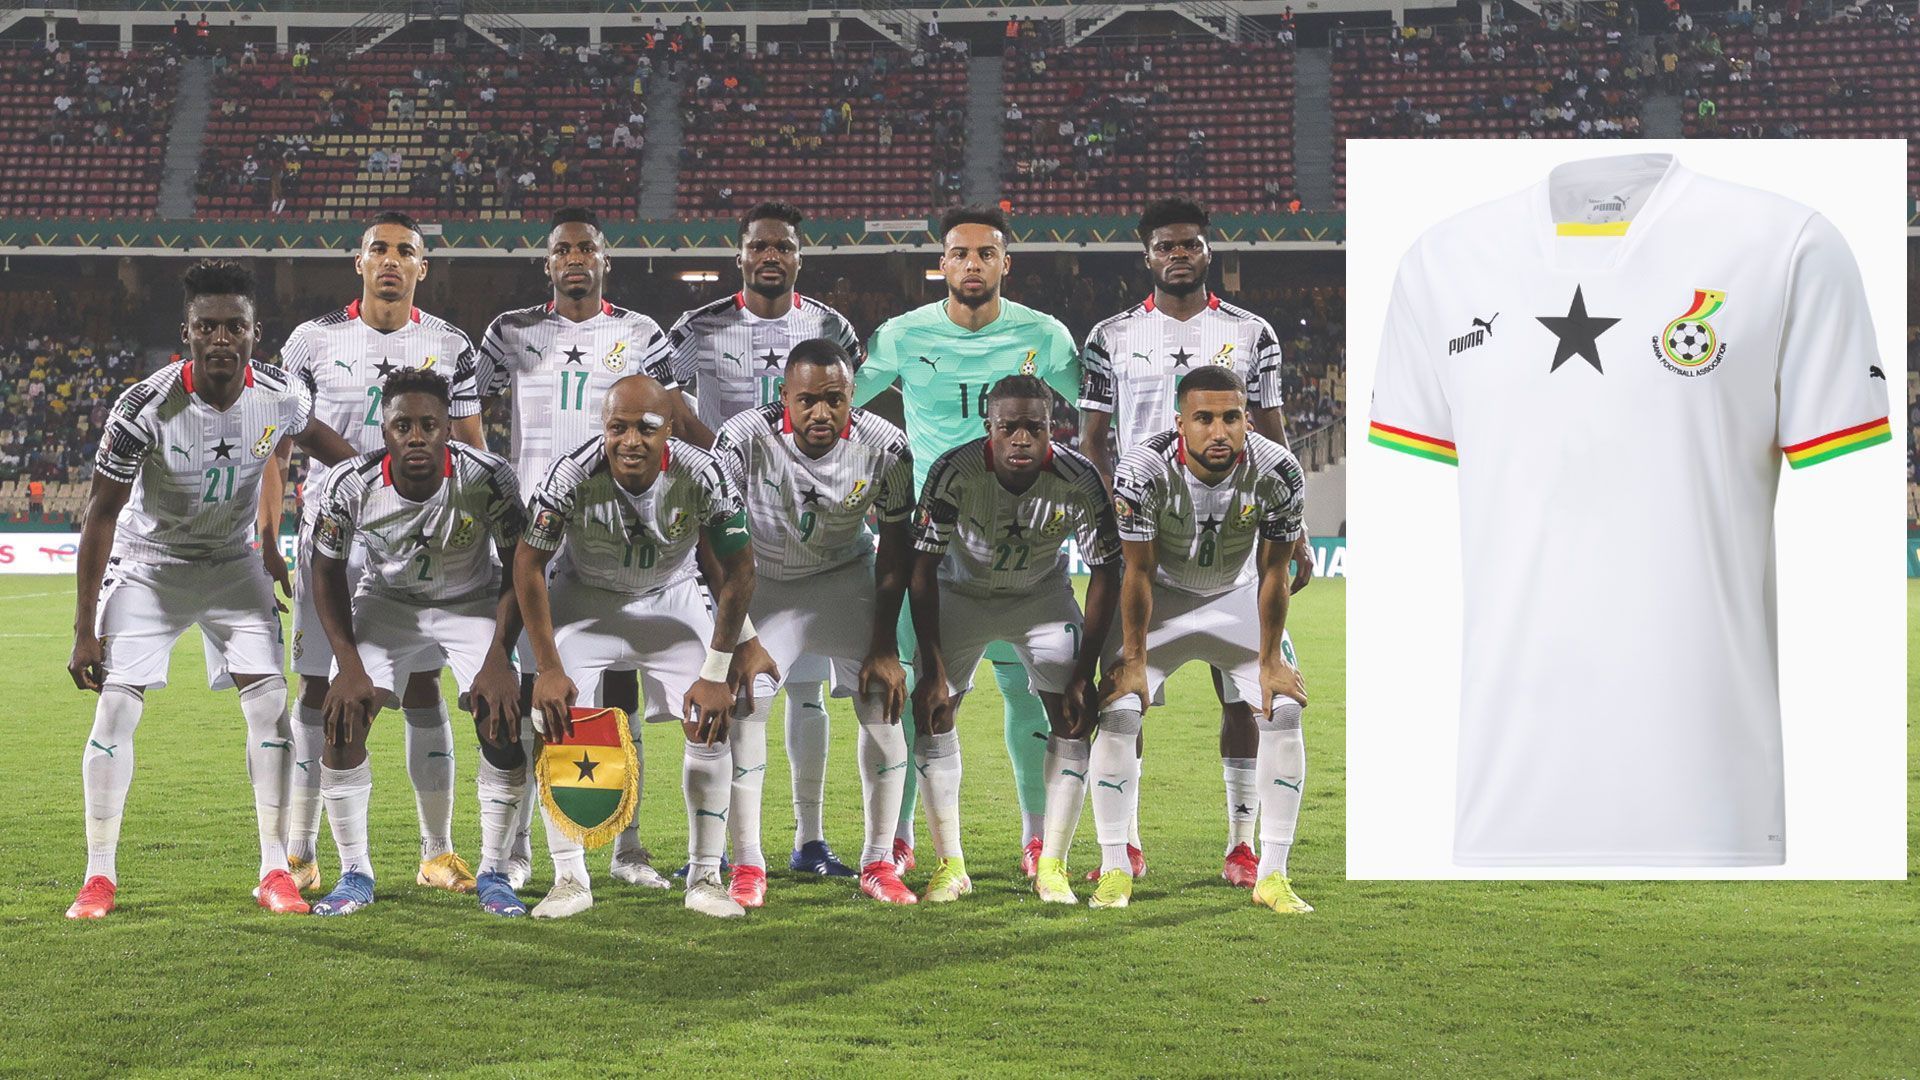 
                <strong>Ghana</strong><br>
                Ghana setzt bei der Weltmeisterschaft wieder auf ein schlichteres Design als beim Vorgängermodell. Das Trikot ist beinahe gänzlich in Weiß gehalten. Auffällig ist der große schwarze Stern der "Black Stars" auf Brusthöhe. An den Ärmeln sind zudem die Nationalfarben abgebildet. 
              